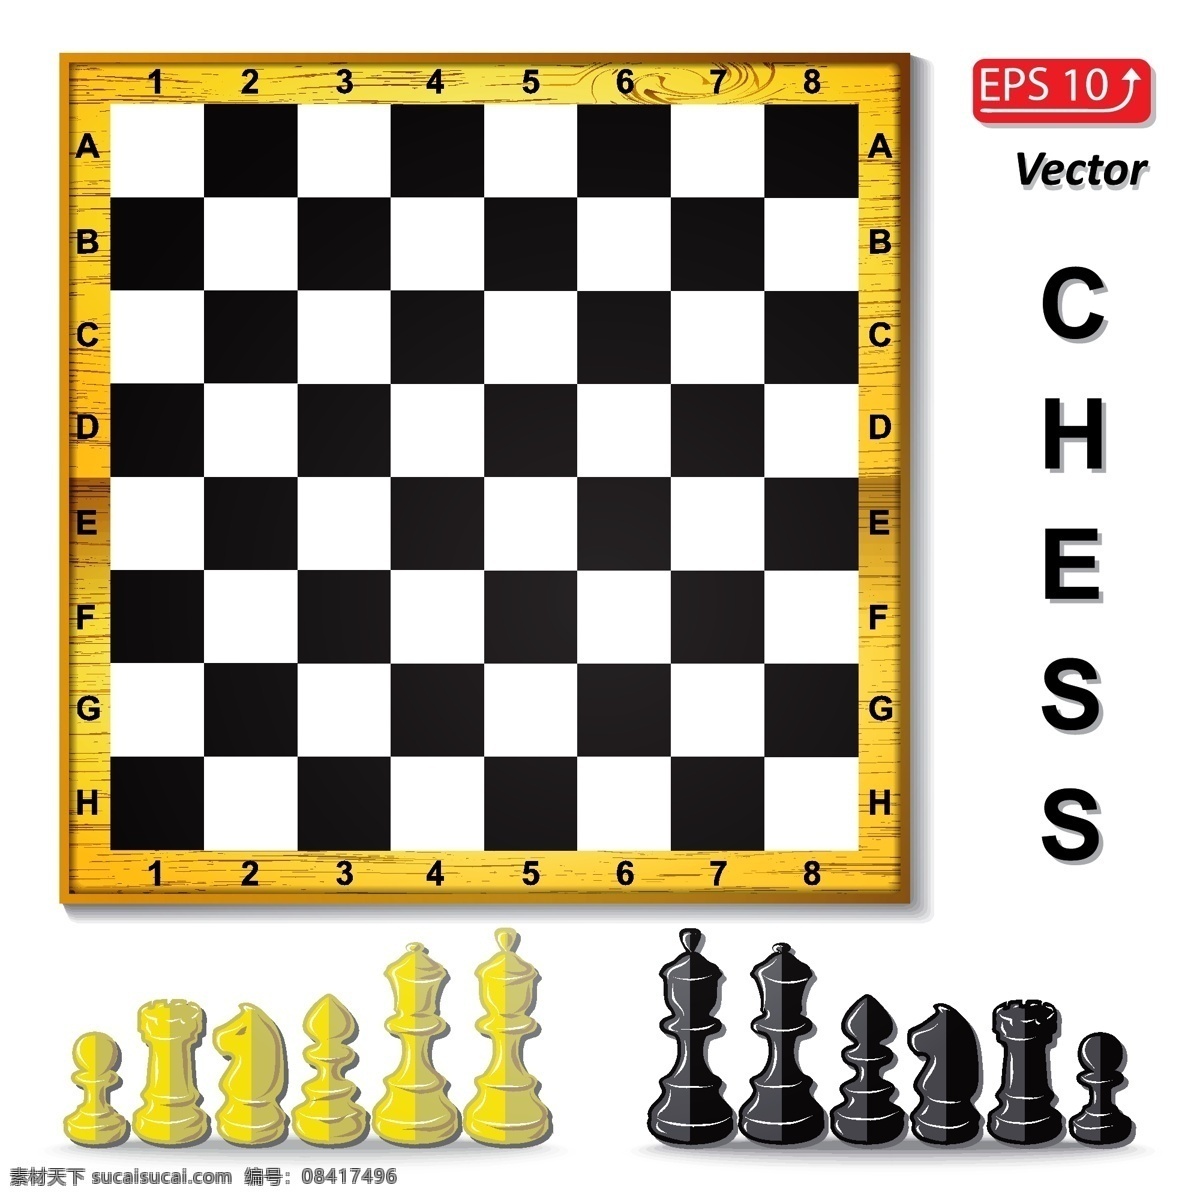 黑白 格子 棋盘 棋子 黑白棋盘 格子棋盘 国际象棋 象棋 生活百科 矢量素材 白色